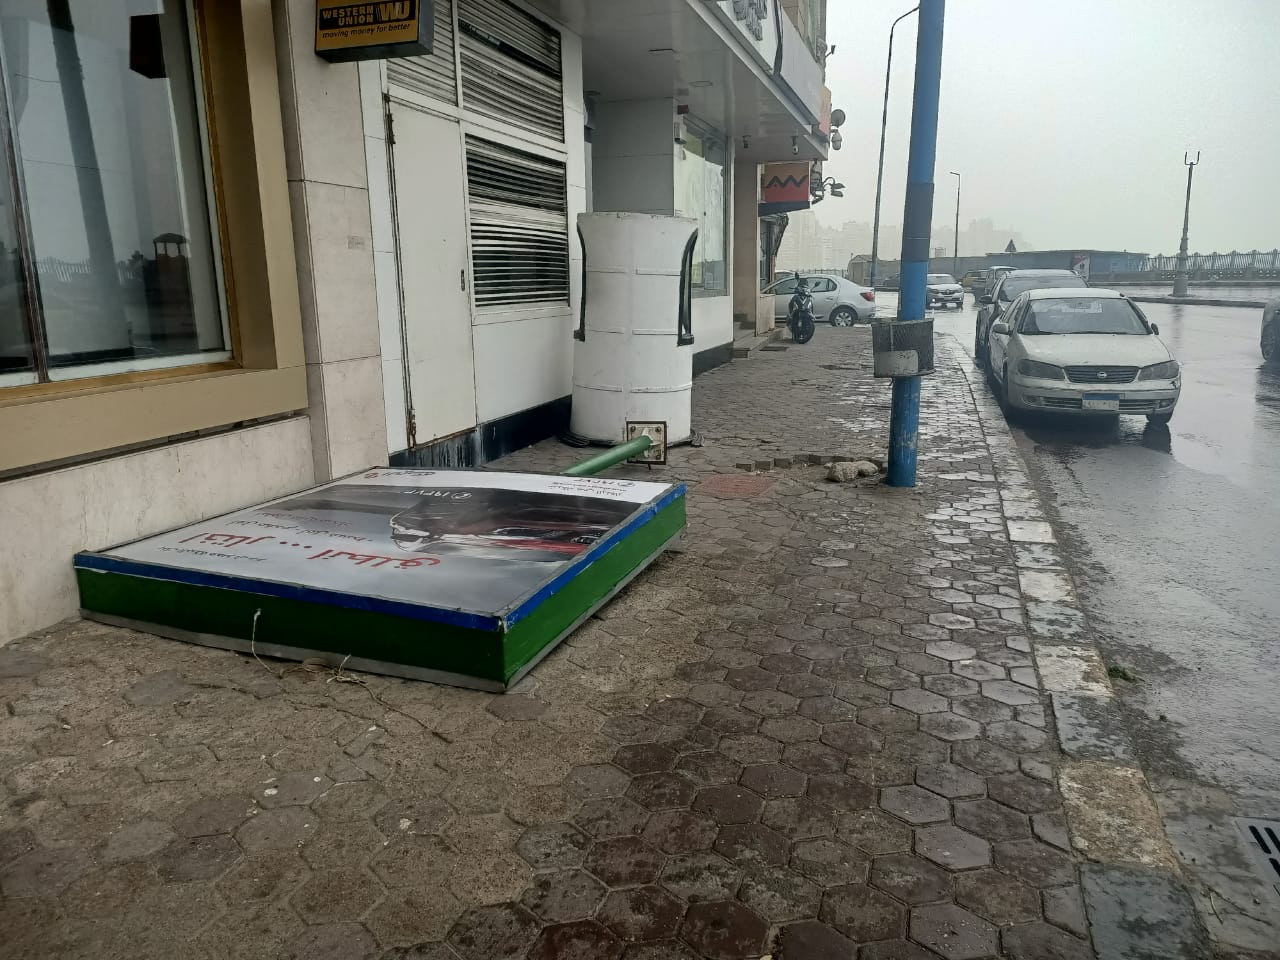 سقوط لافتات إعلانية على كورنيش الإسكندرية بسبب العواصف | صور وفيديو